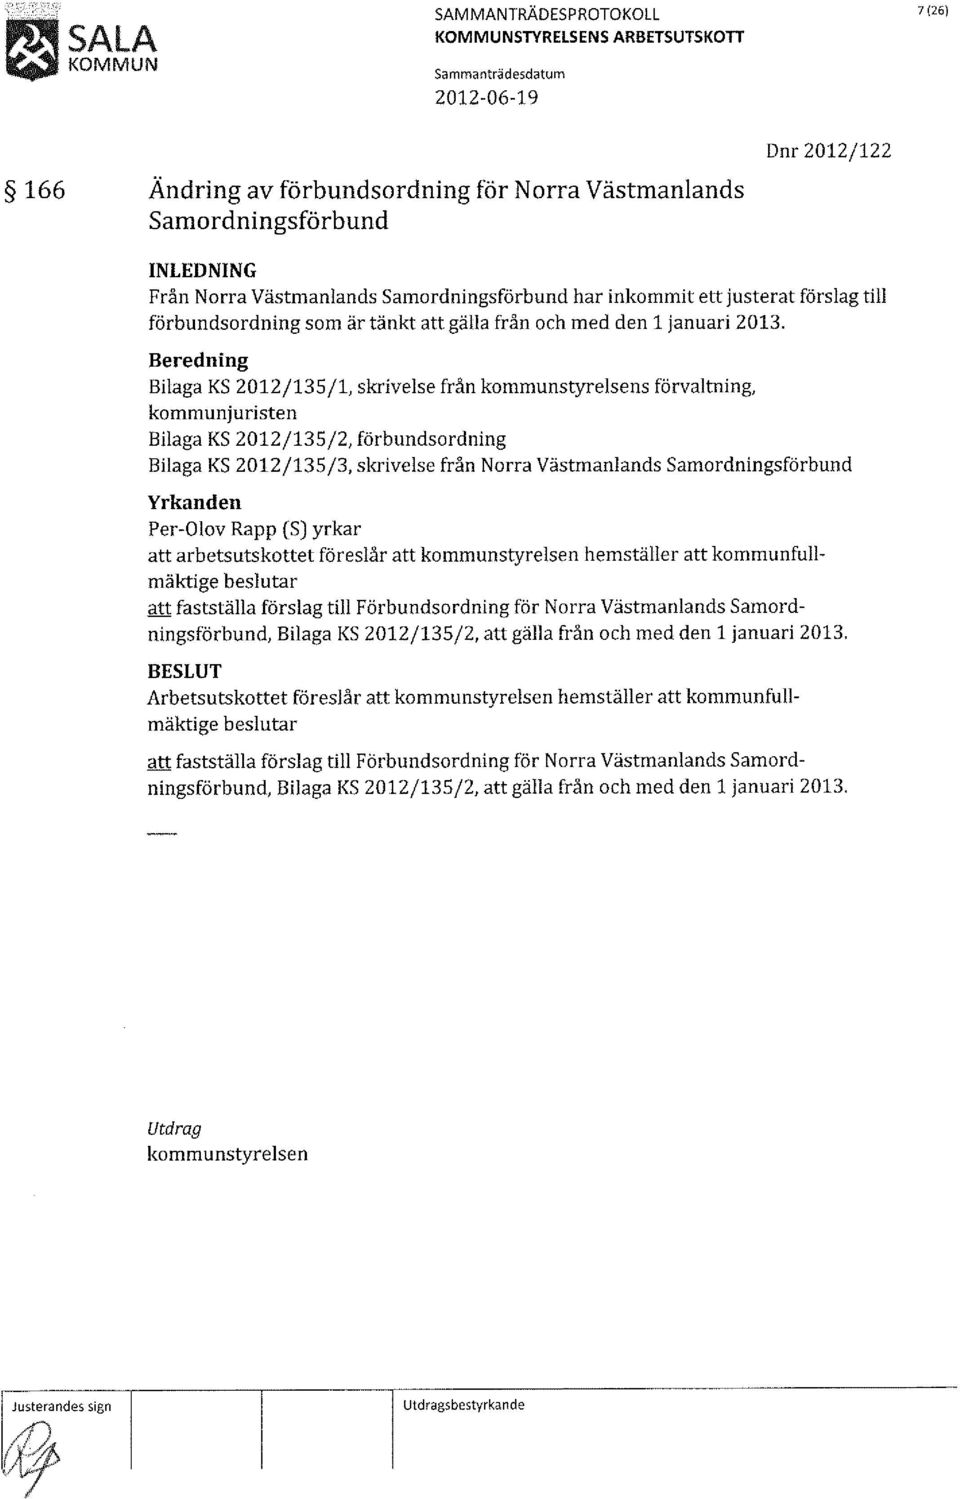 Beredning Bilaga KS 2012/135/1, skrivelse från kommunstyrelsens förvaltning, kommunjuristen Bilaga KS 2012/135/2, förbundsordning Bilaga KS 2012/135/3, skrivelse från Norra Västmanlands